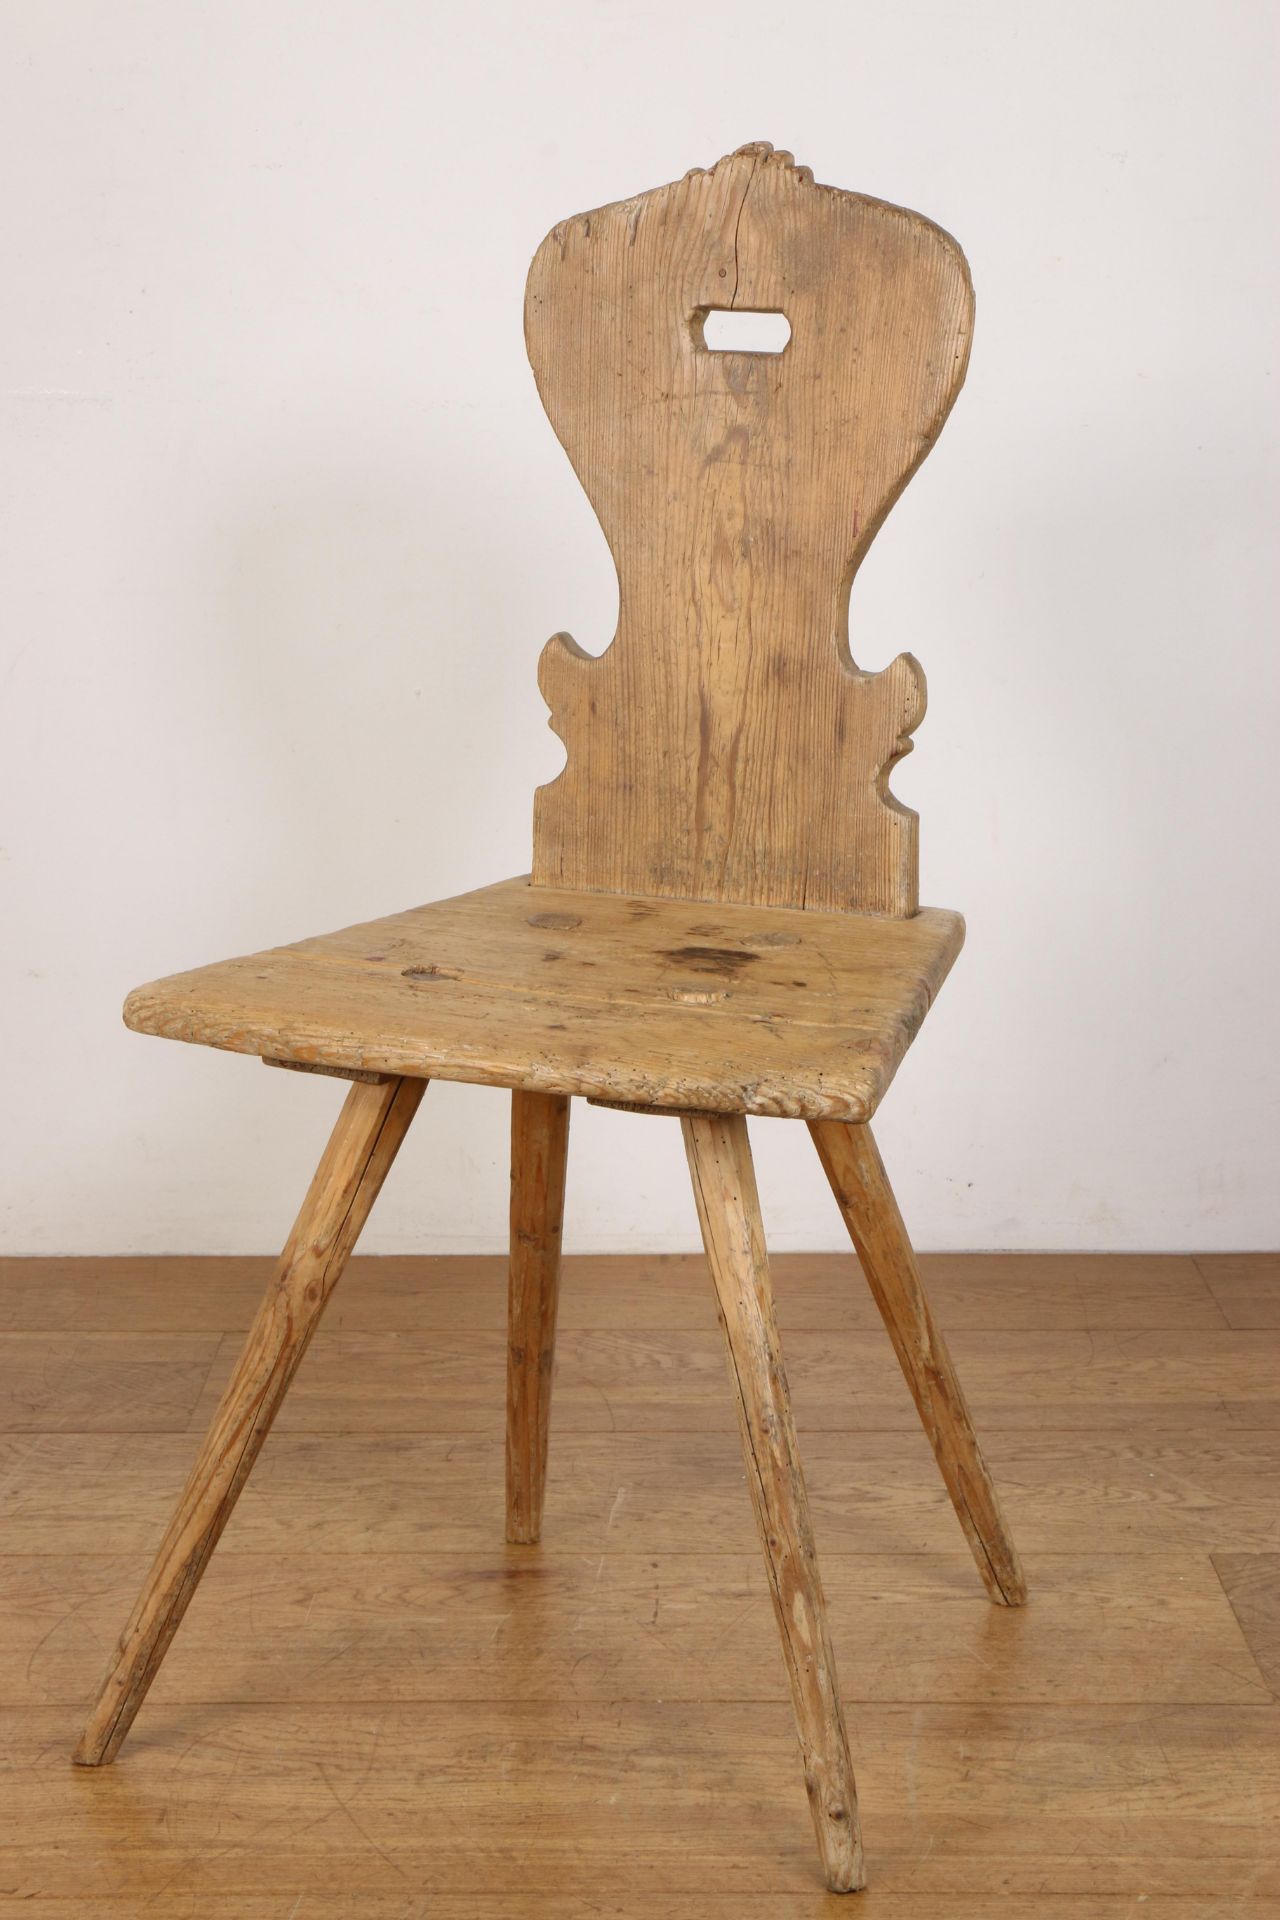 Tirol, grenenhouten stalstoel, 'stabelle', ca. 1800